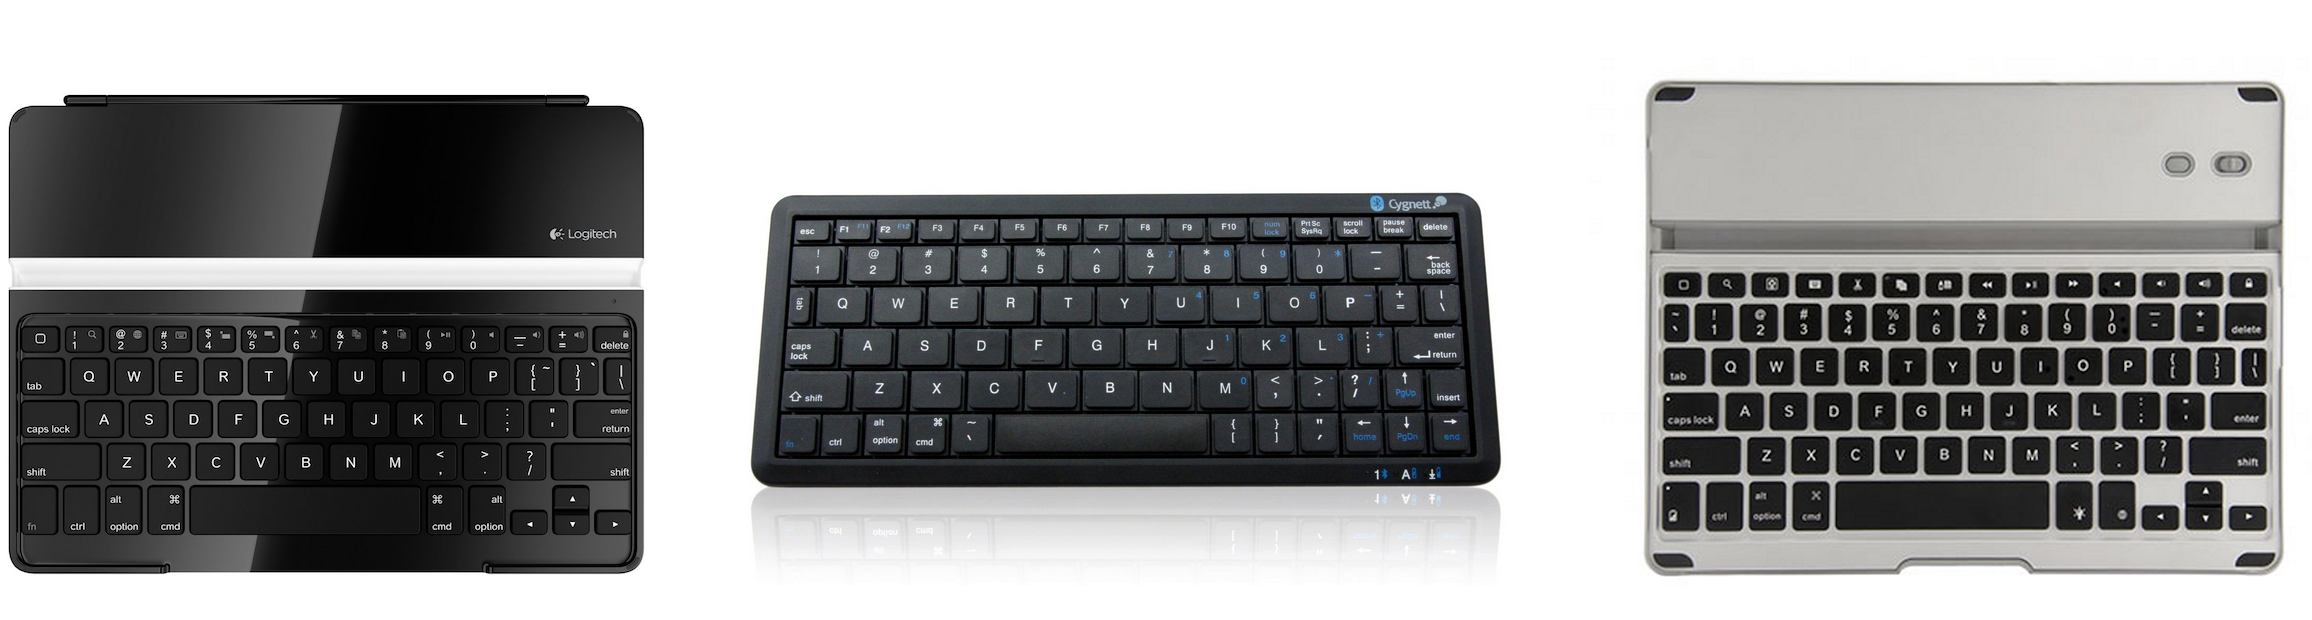 Bluetooth keyboard-02